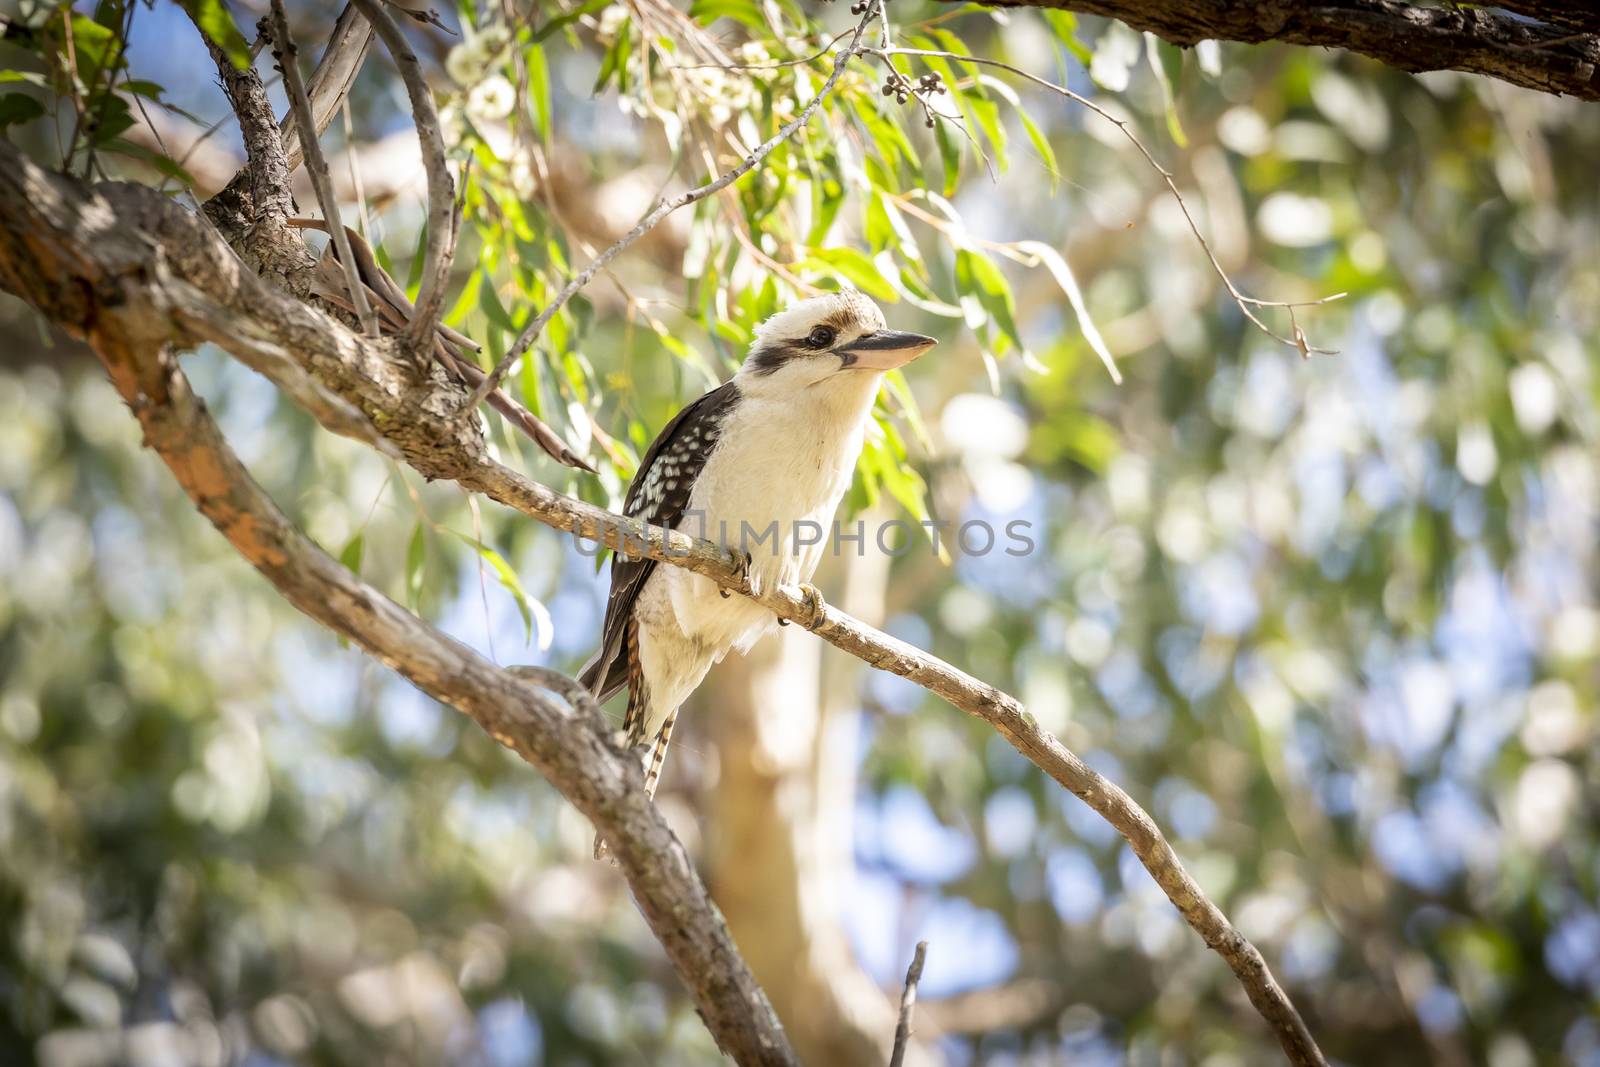 A Kookaburra bird sitting on a branch in a tree in the sunshine in regional Australia